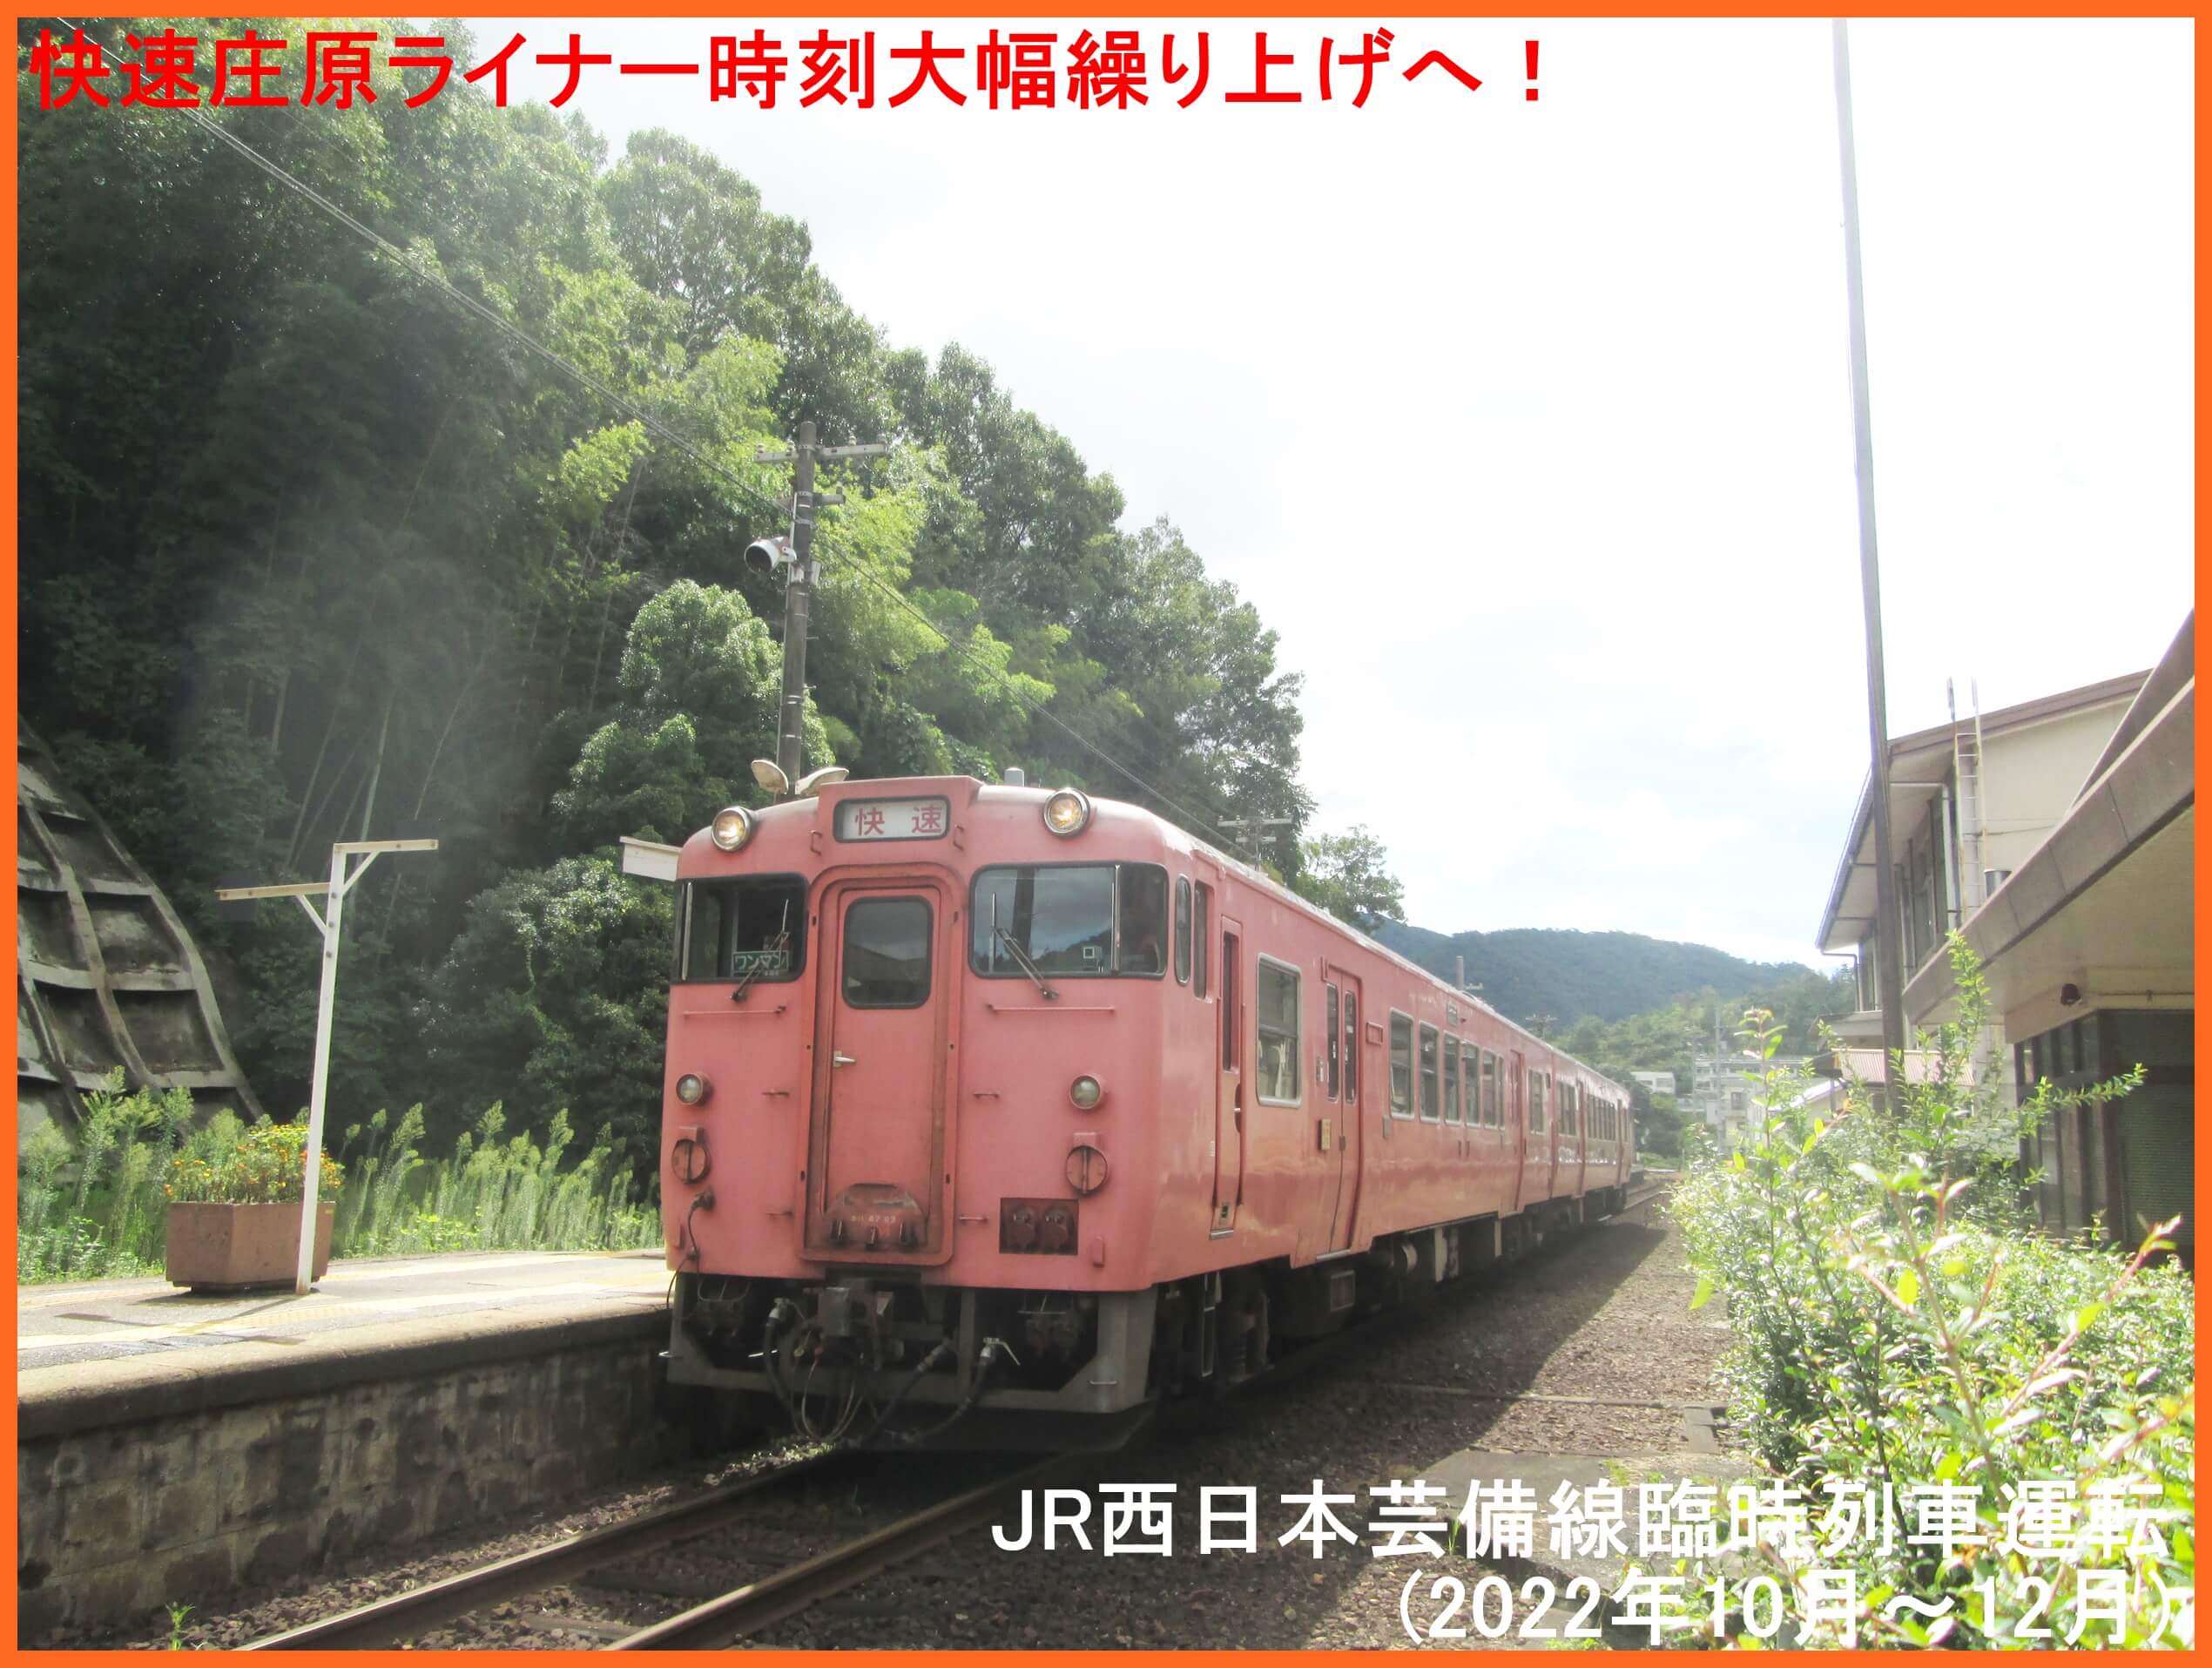 快速庄原ライナー時刻大幅繰り上げへ！　JR西日本芸備線臨時列車運転(2022年10月～12月)